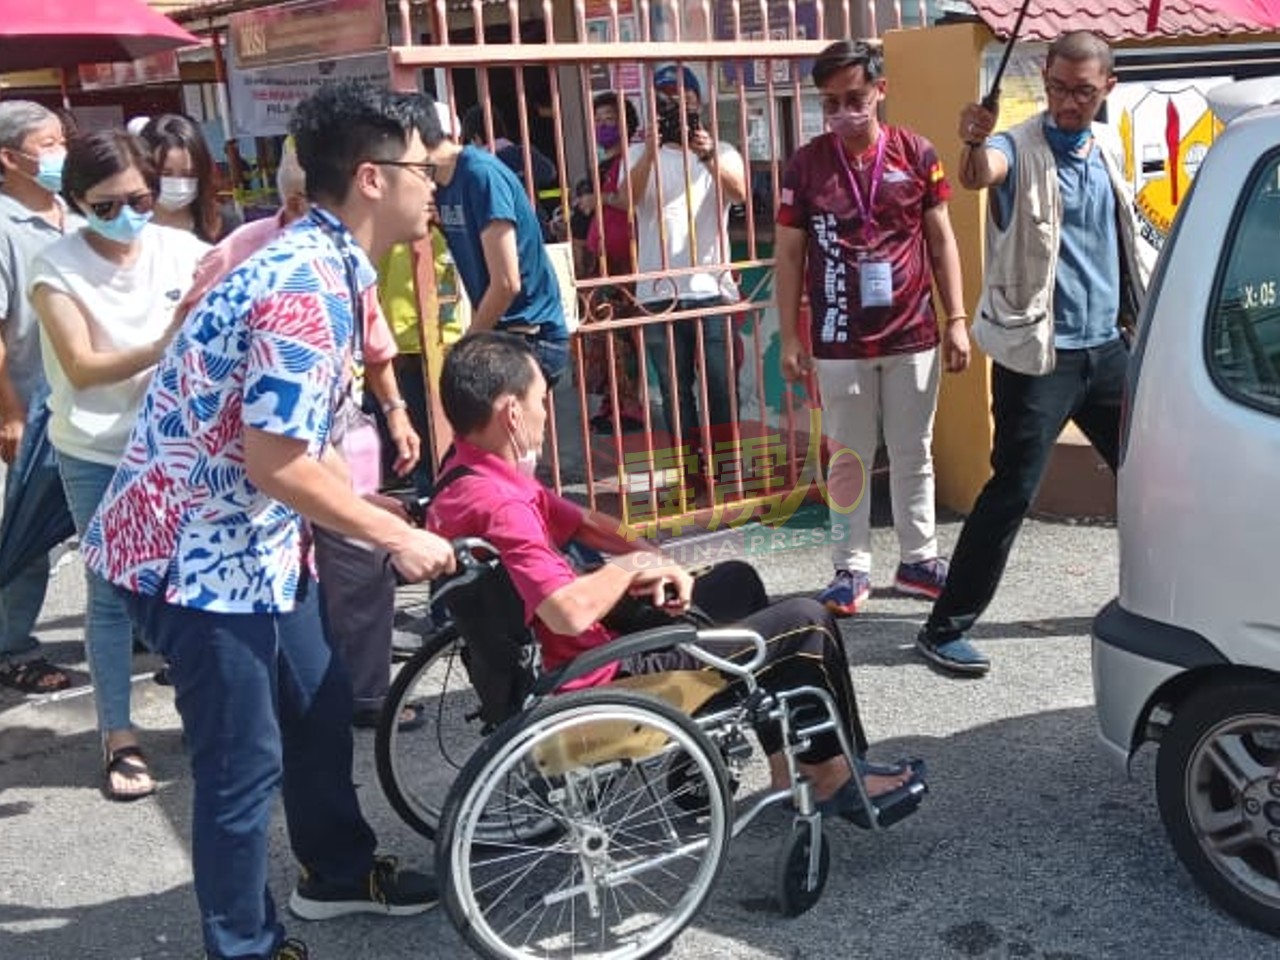 希盟怡保东区候选人李存孝巡视甘榜巴西富地小学投票中心时，巧遇年迈残疾的选民，并主动趋前协助推轮椅，让老选民登上车子离开。 